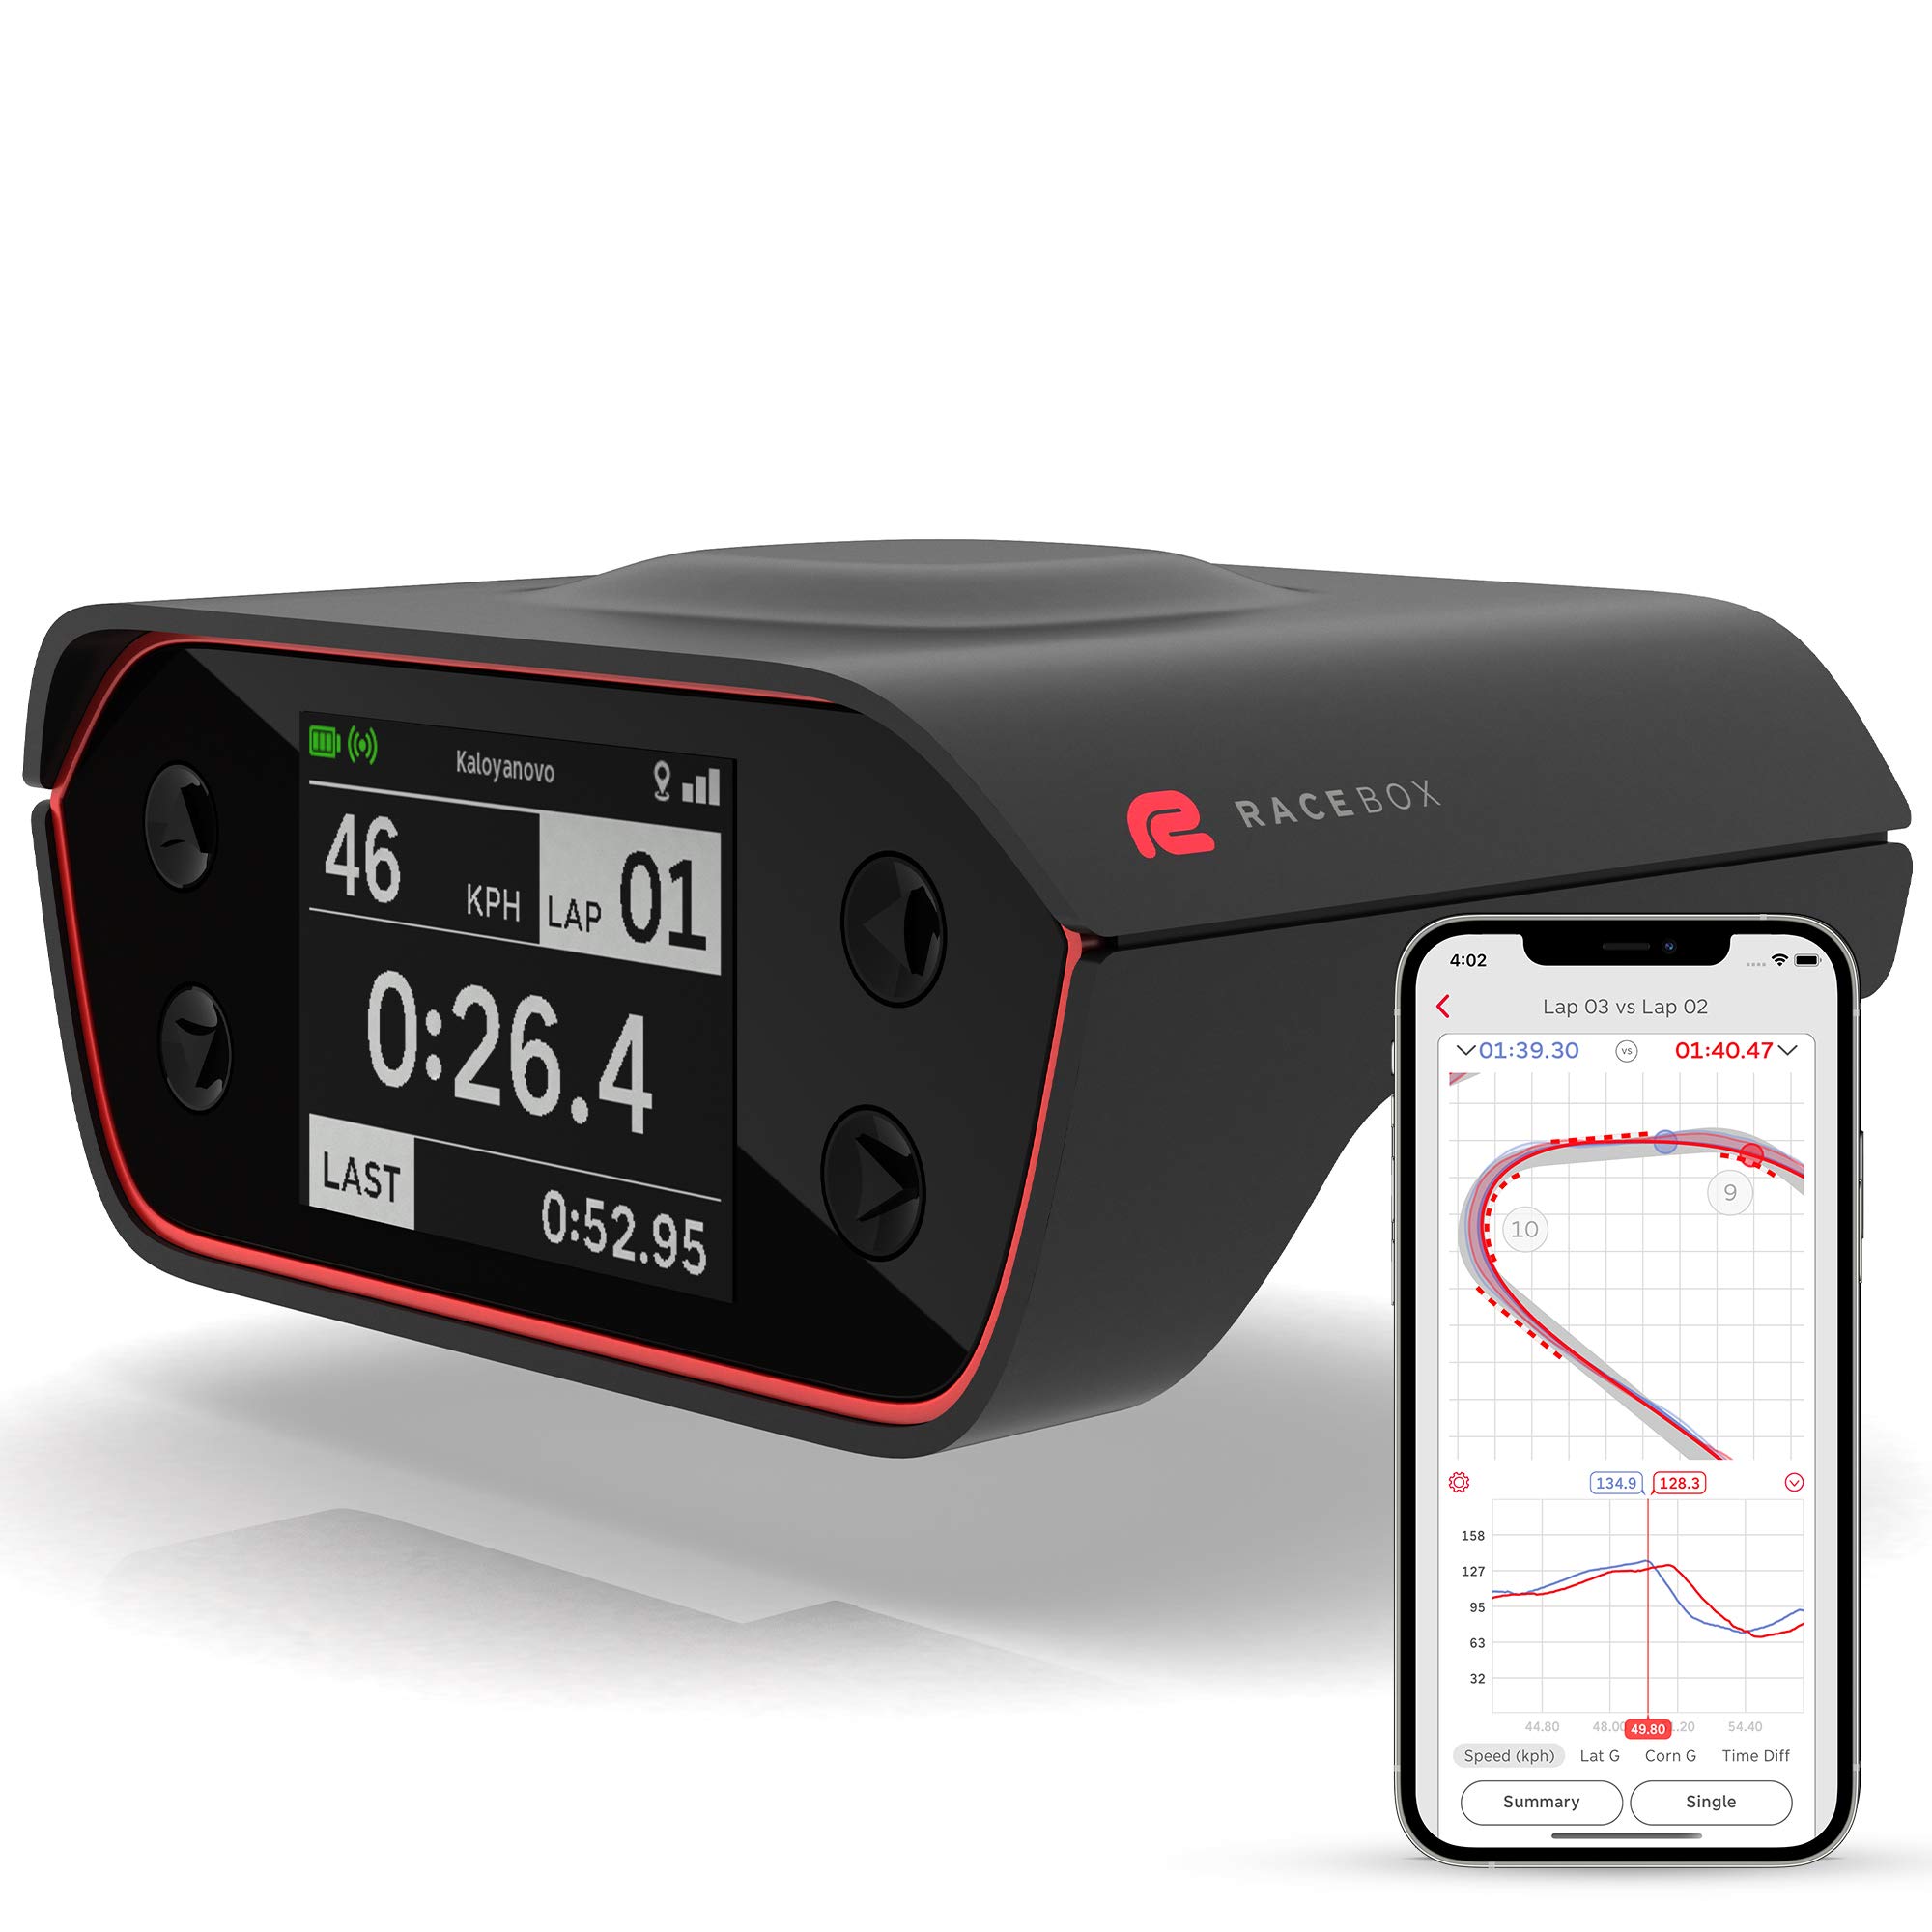  RaceBox Официальный измеритель производительности на основе GPS 10 Гц с мобильным приложением - Таймер круга авто...